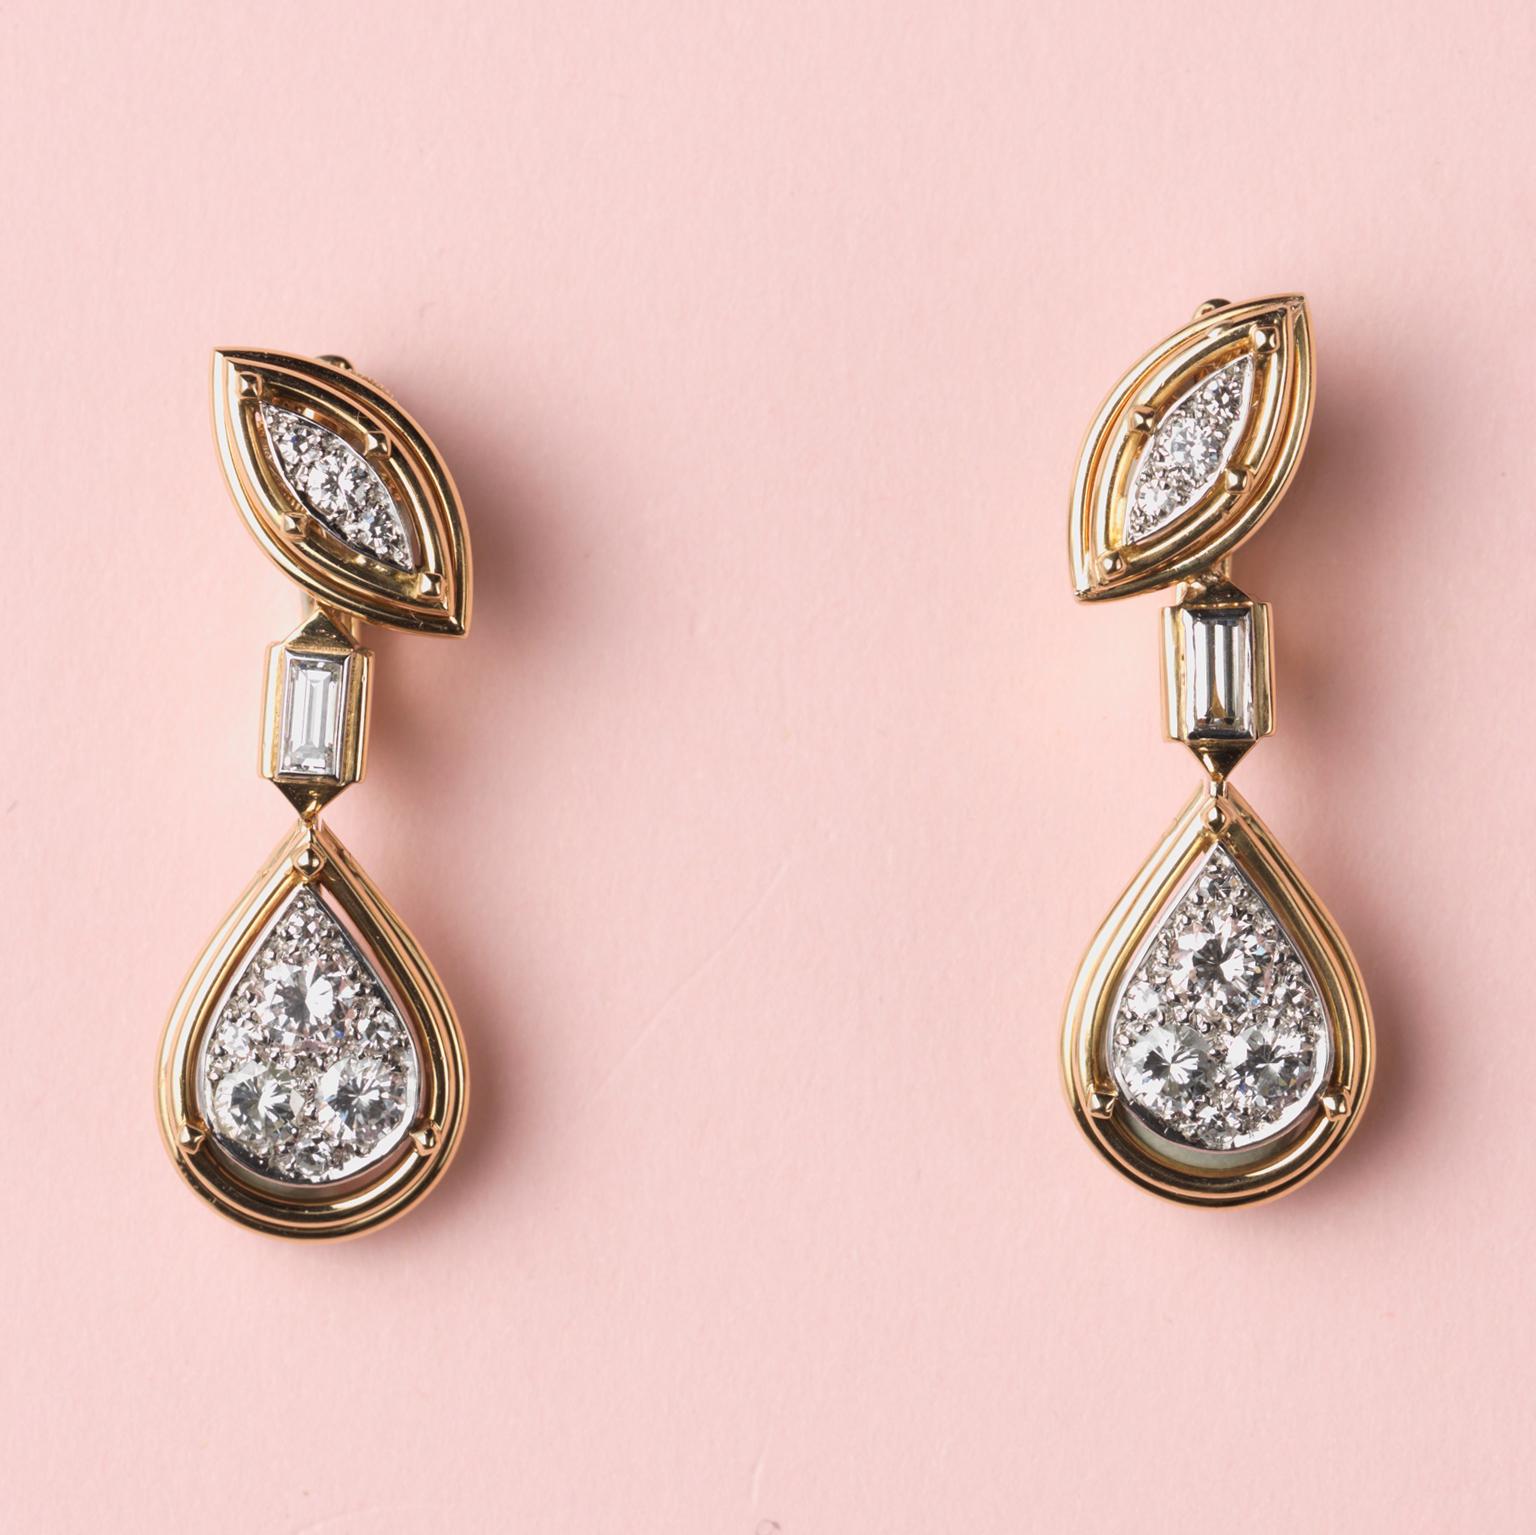 Paire de boucles d'oreilles en or 18 carats et platine ; au sommet, un élément en forme de marquise en fil d'or serti de diamants taille brillant, d'où pend - relié par un diamant taille baguette - une goutte en forme de poire en fil d'or et